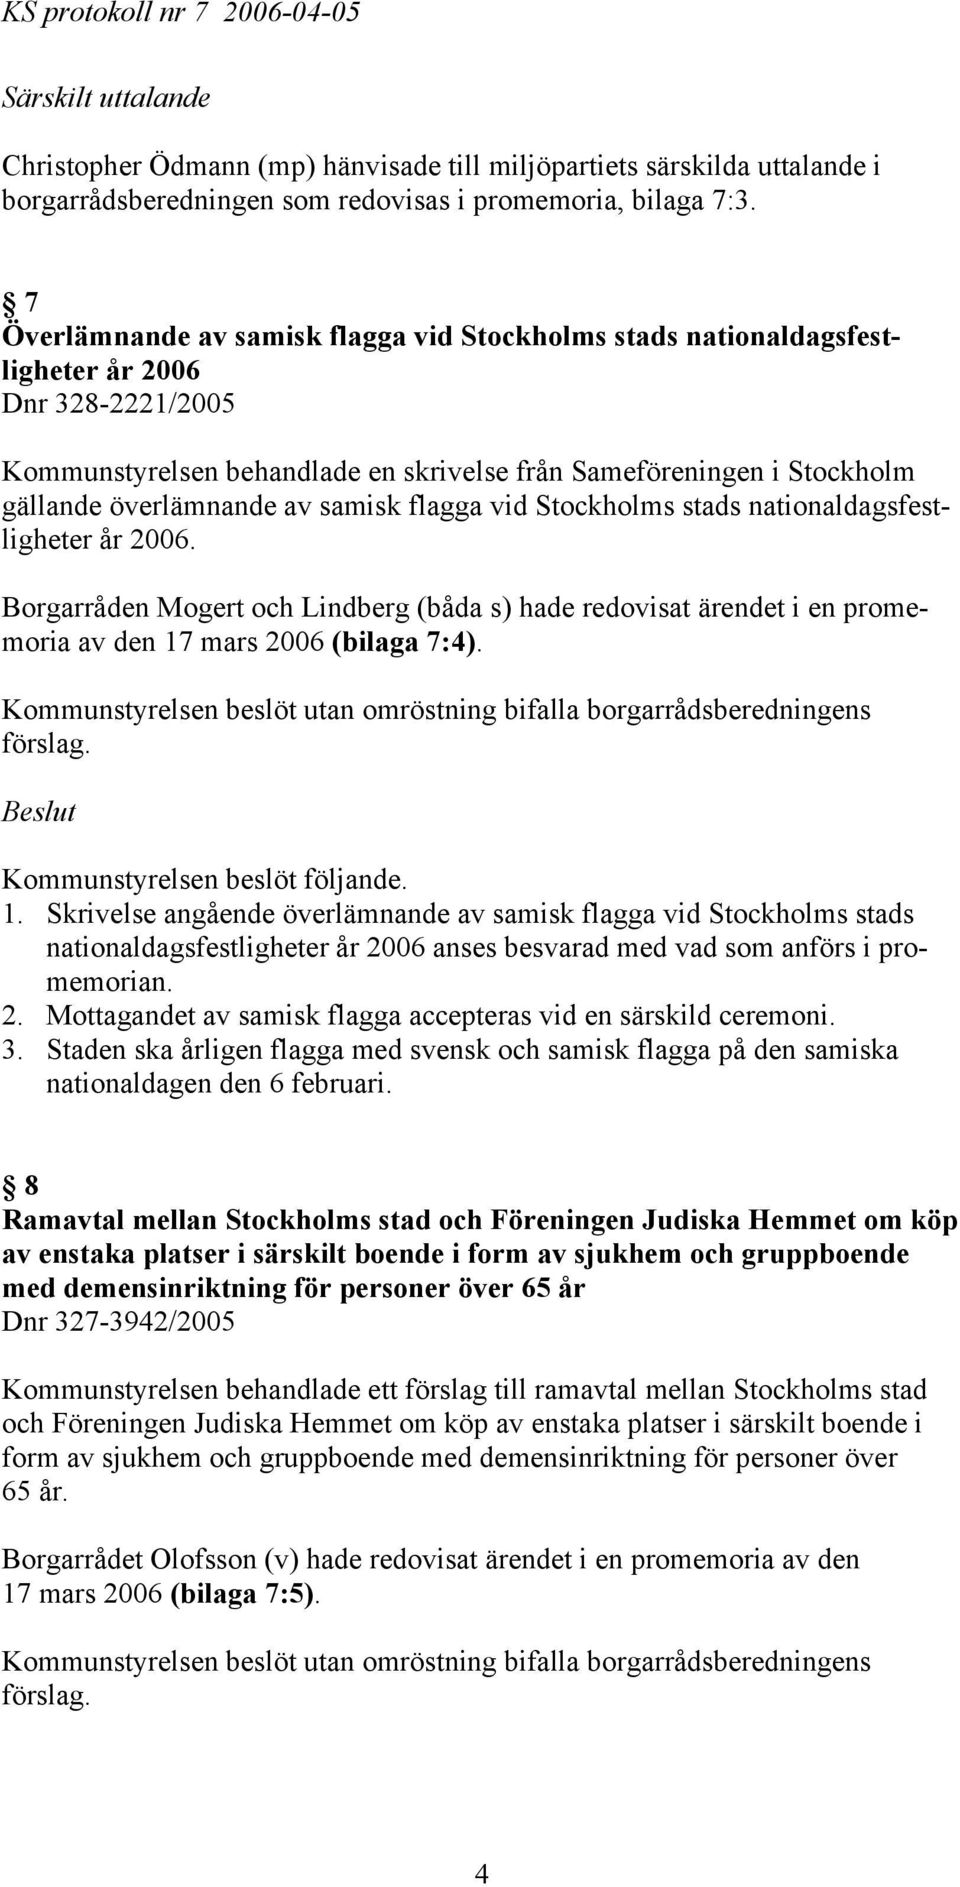 av samisk flagga vid Stockholms stads nationaldagsfestligheter år 2006. Borgarråden Mogert och Lindberg (båda s) hade redovisat ärendet i en promemoria av den 17